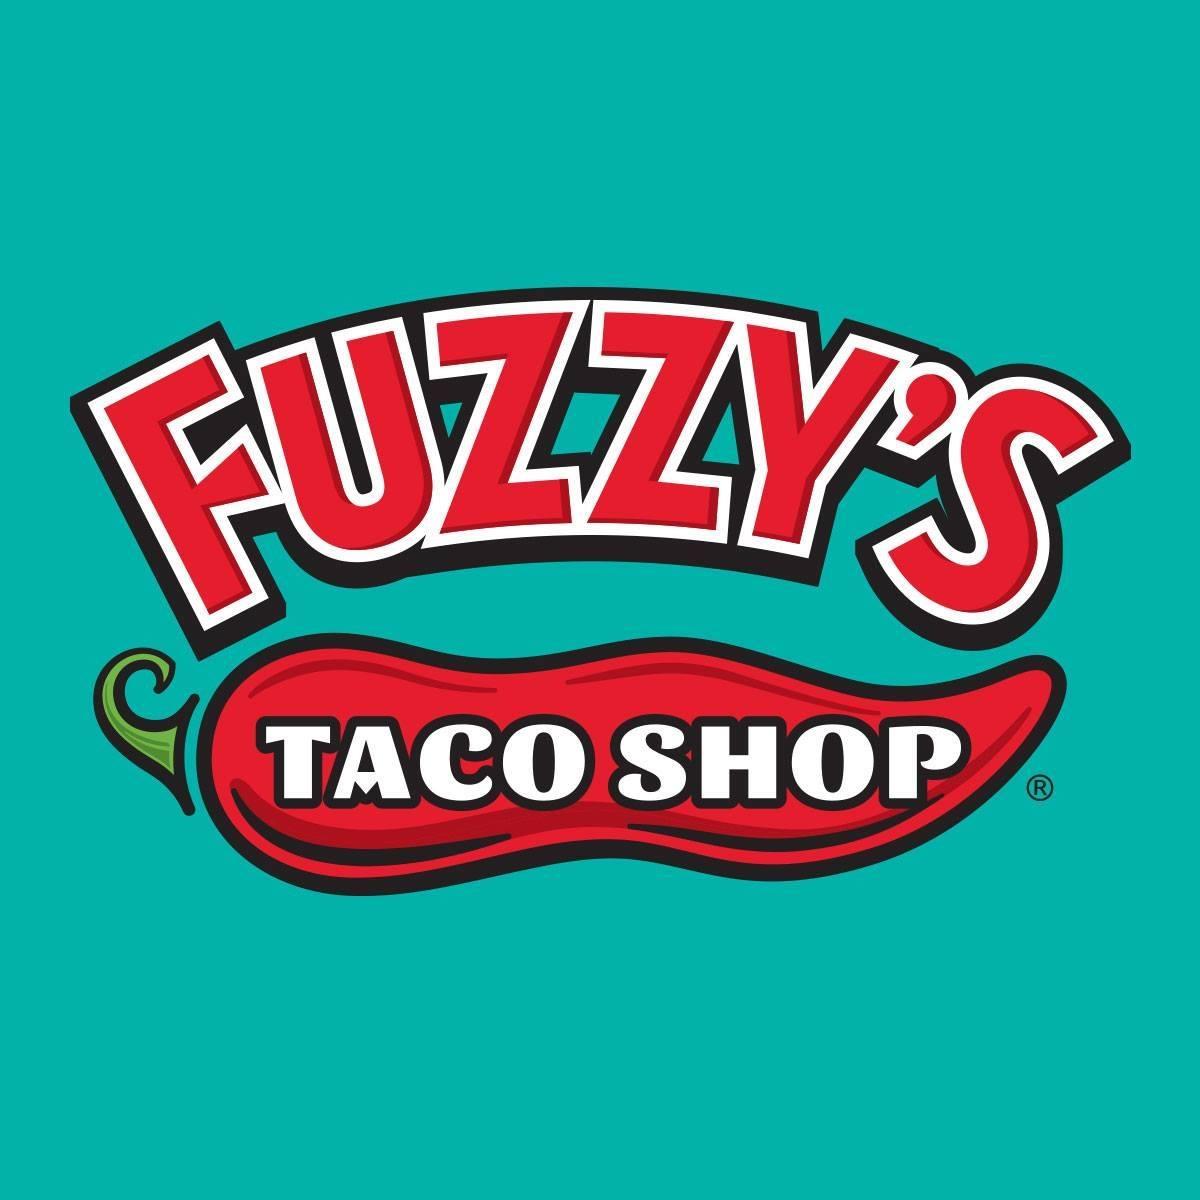 Cinco de Mayo at Fuzzy's Taco Shop - Brandon